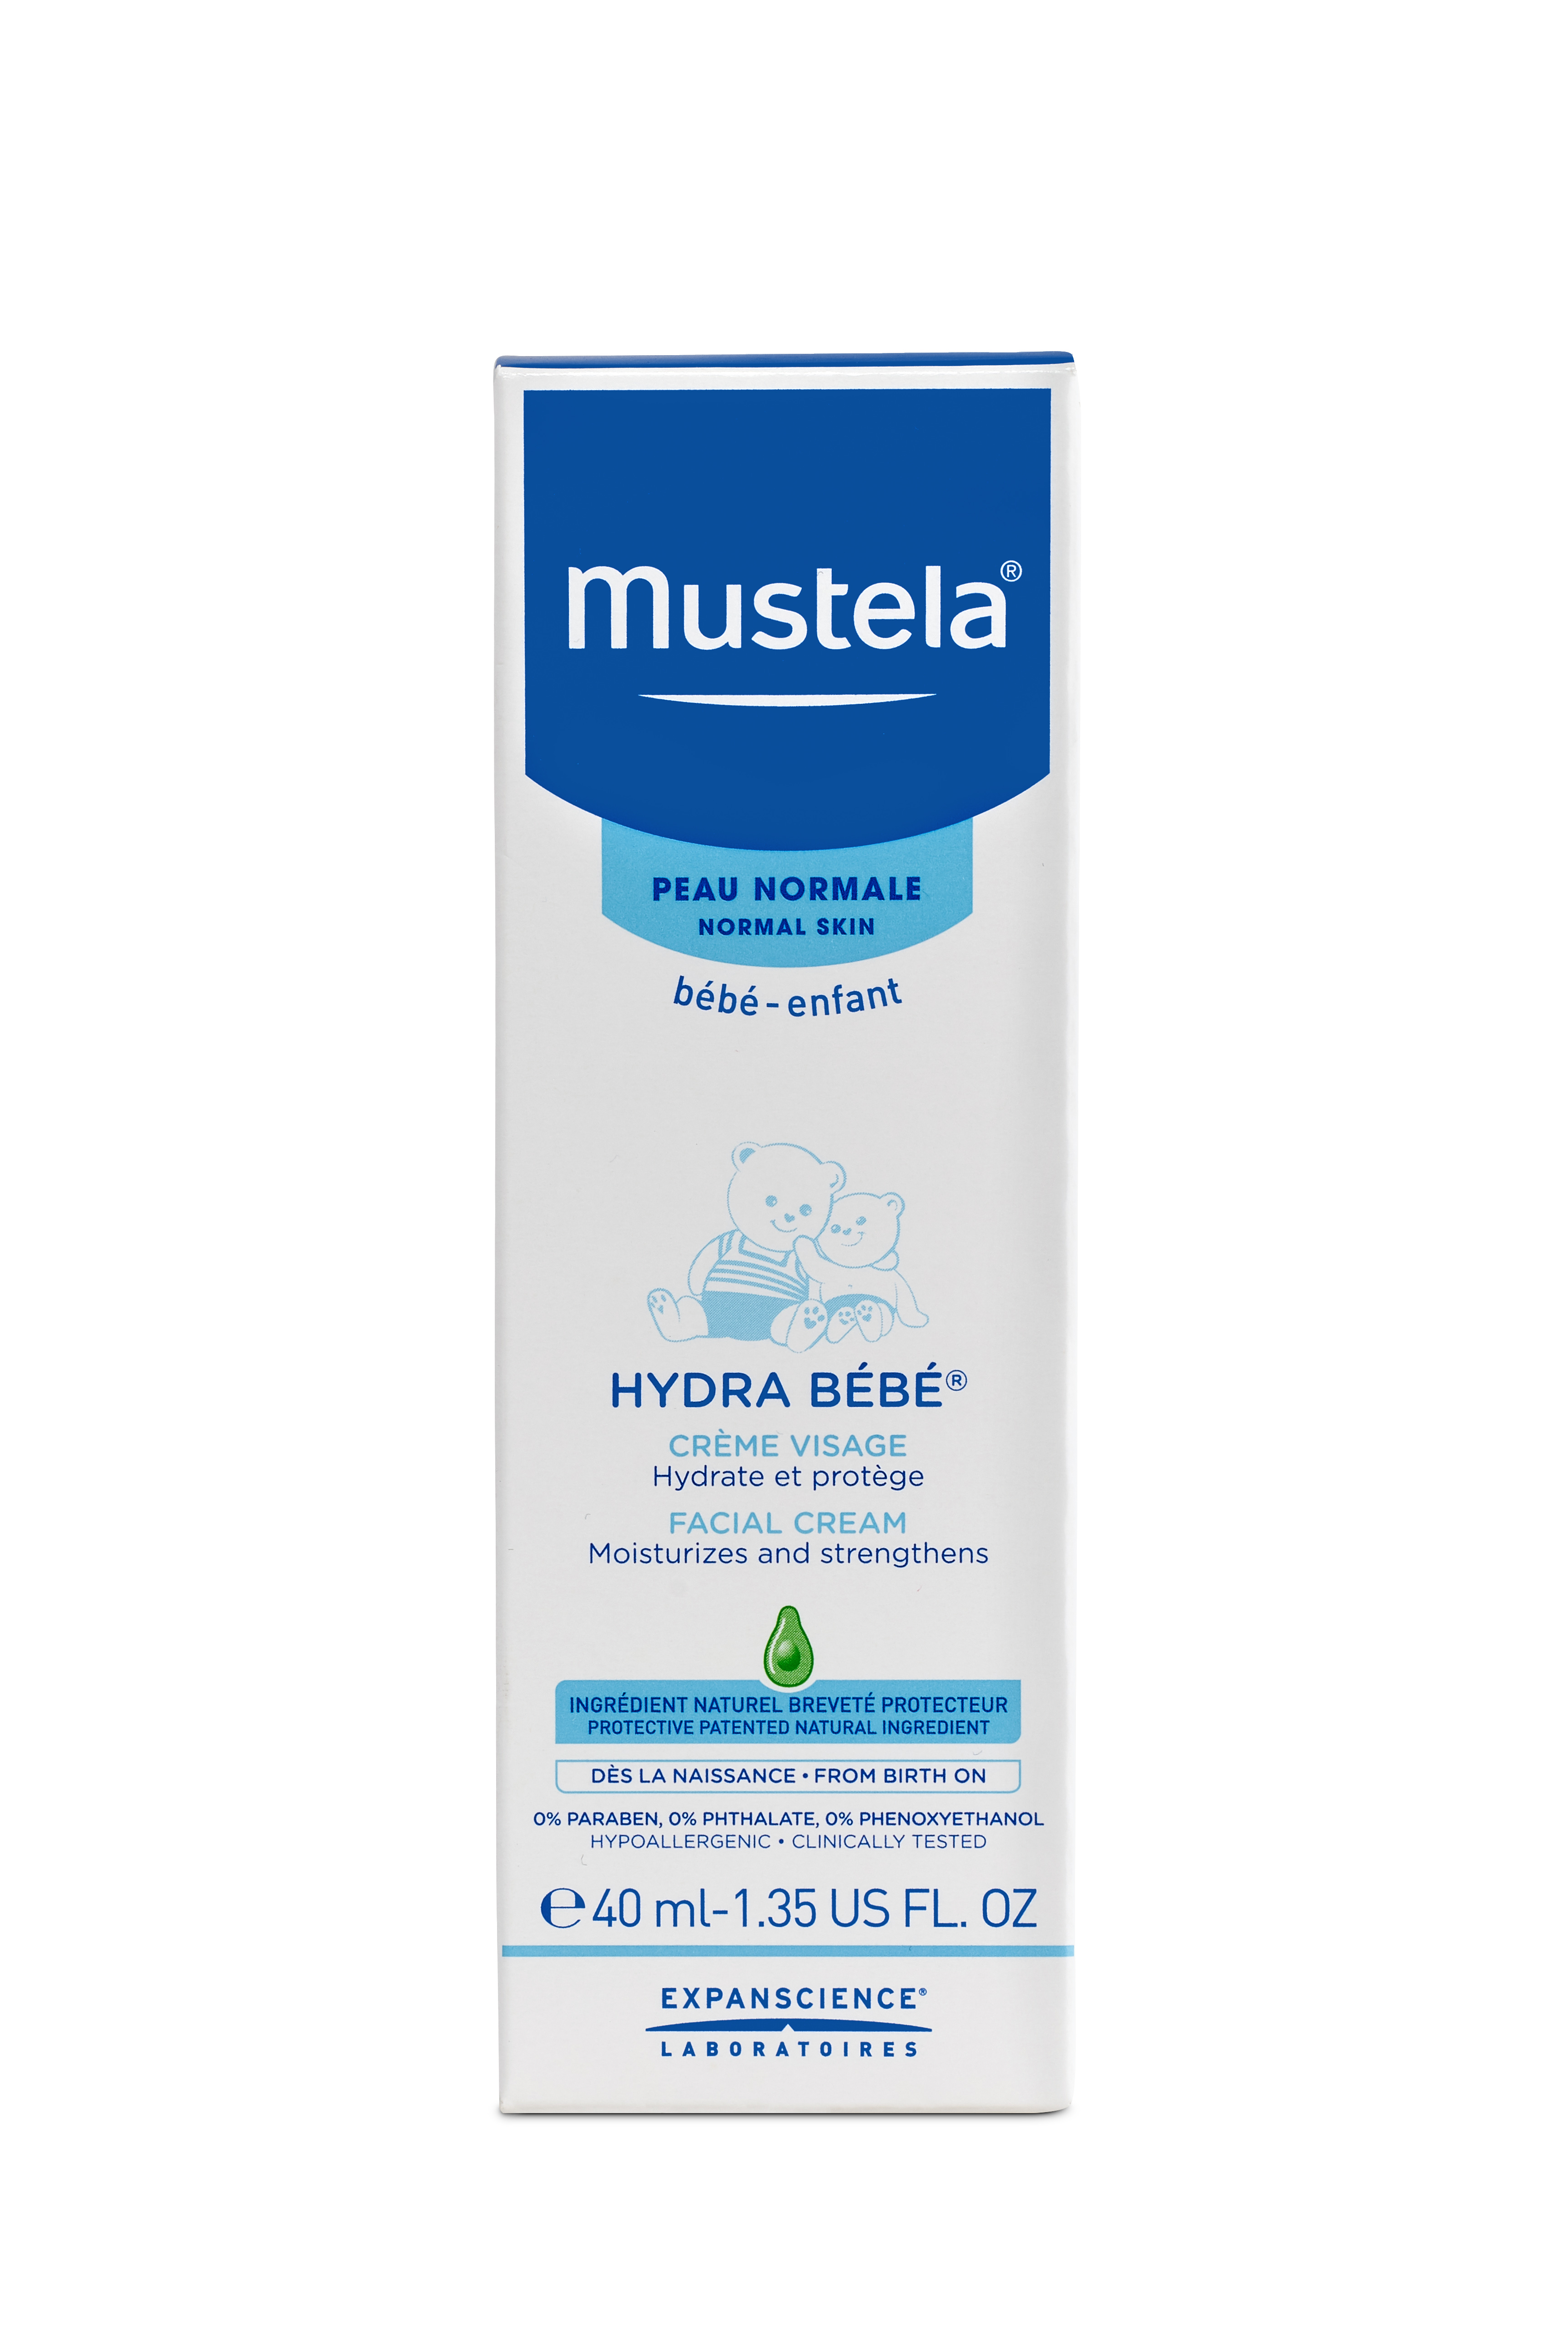 Mustela hydra bebe молочко купить коды стран для tor browser гирда